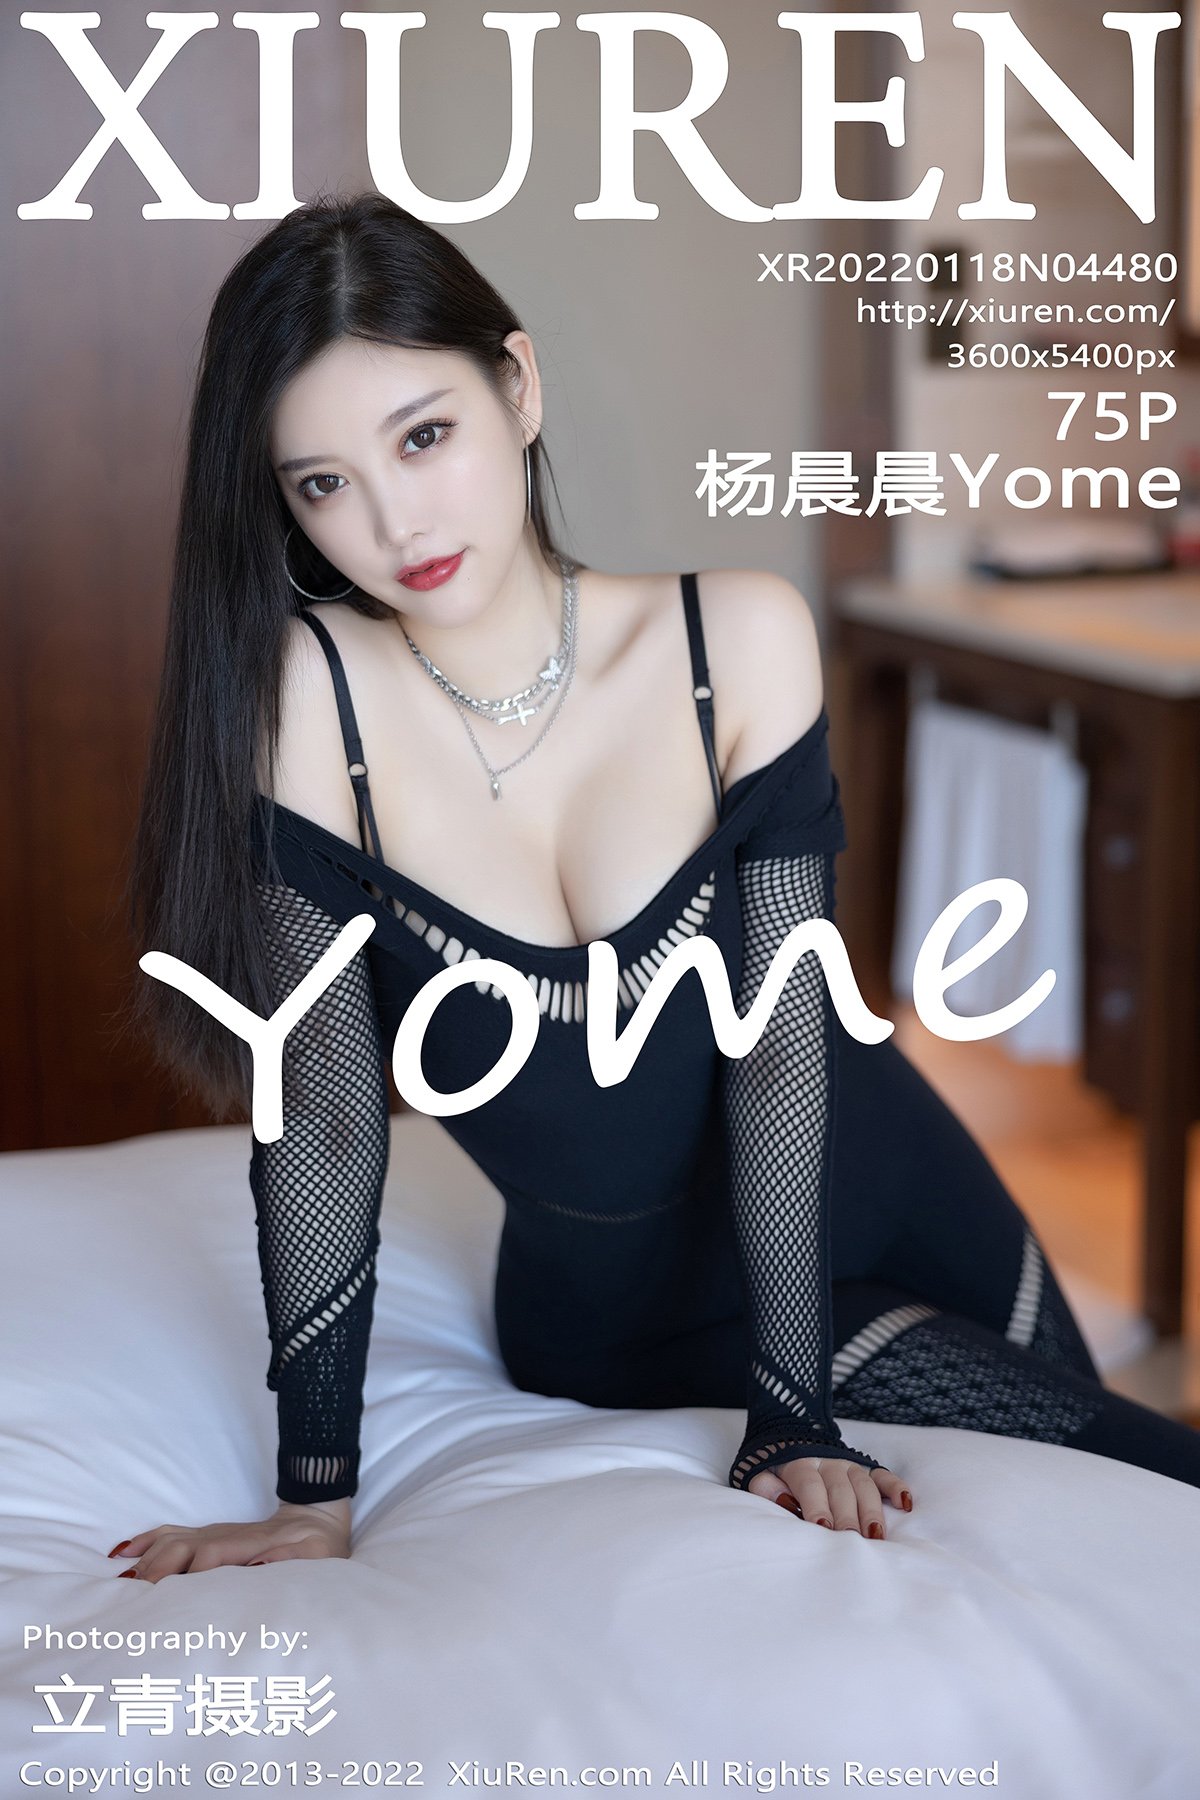 [Xiuren] No. 4480 楊晨晨Yome - 貼圖 - 清涼寫真 -